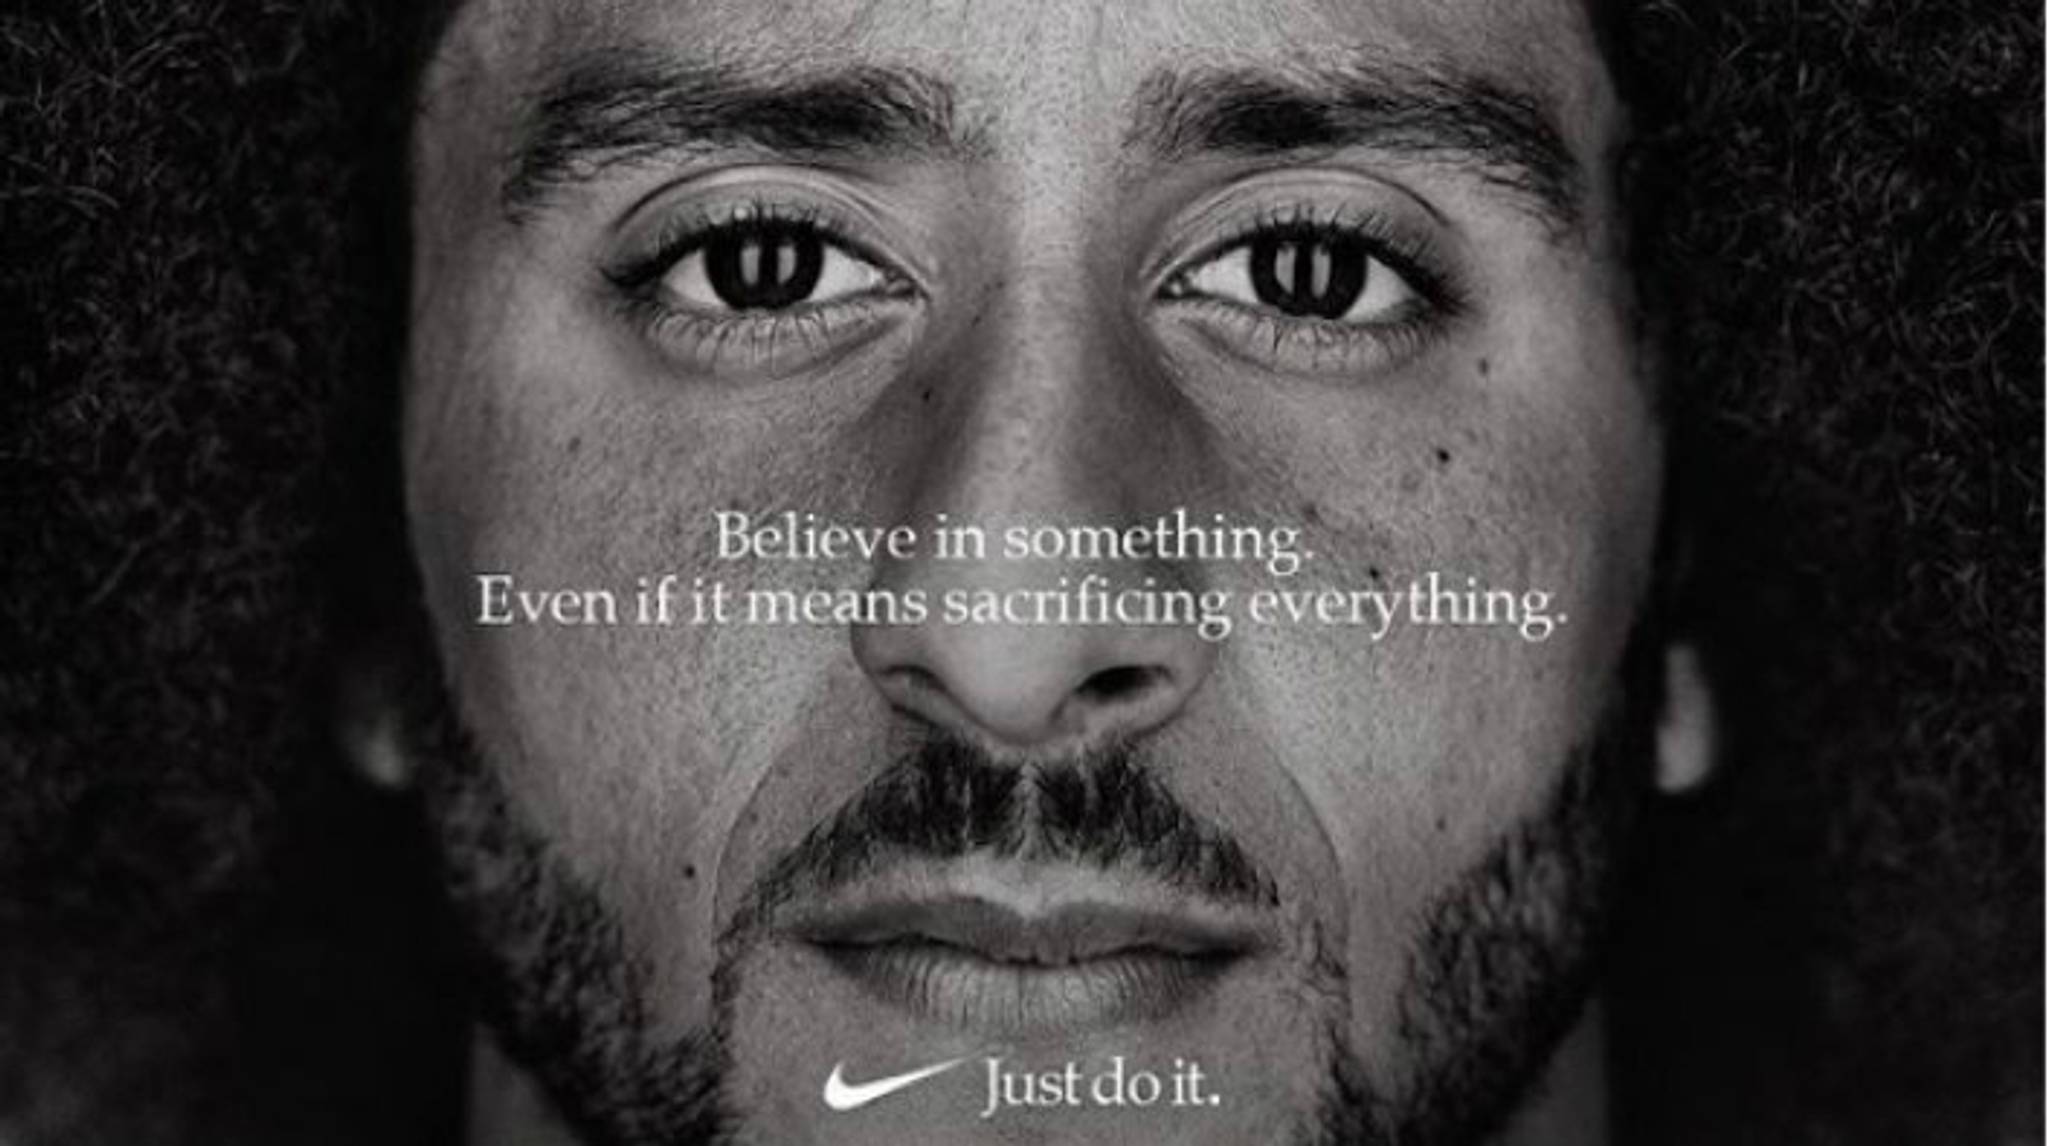 Nike Kaepernick ad accused of insincere 'woke washing'